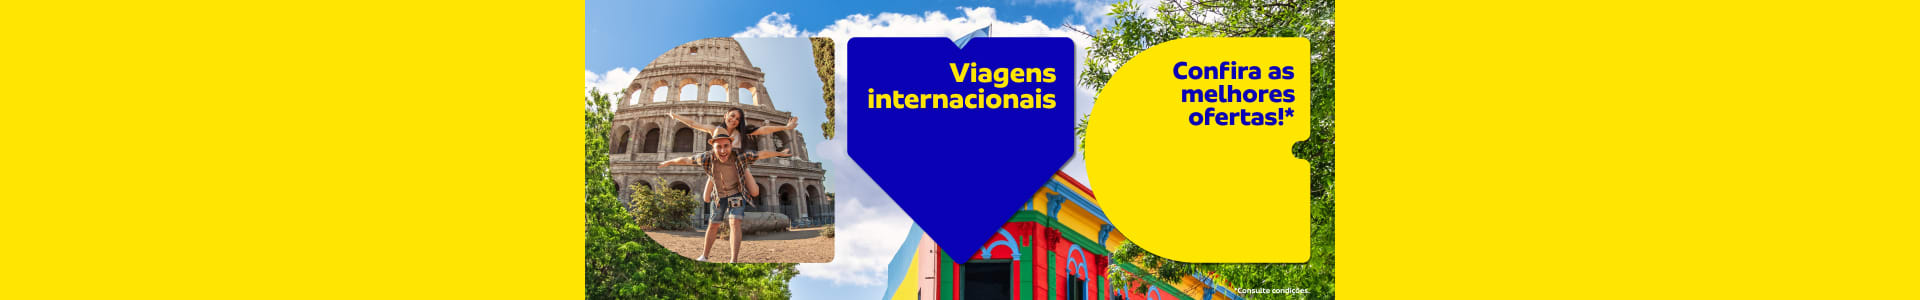 Viagens Internacionais CVC